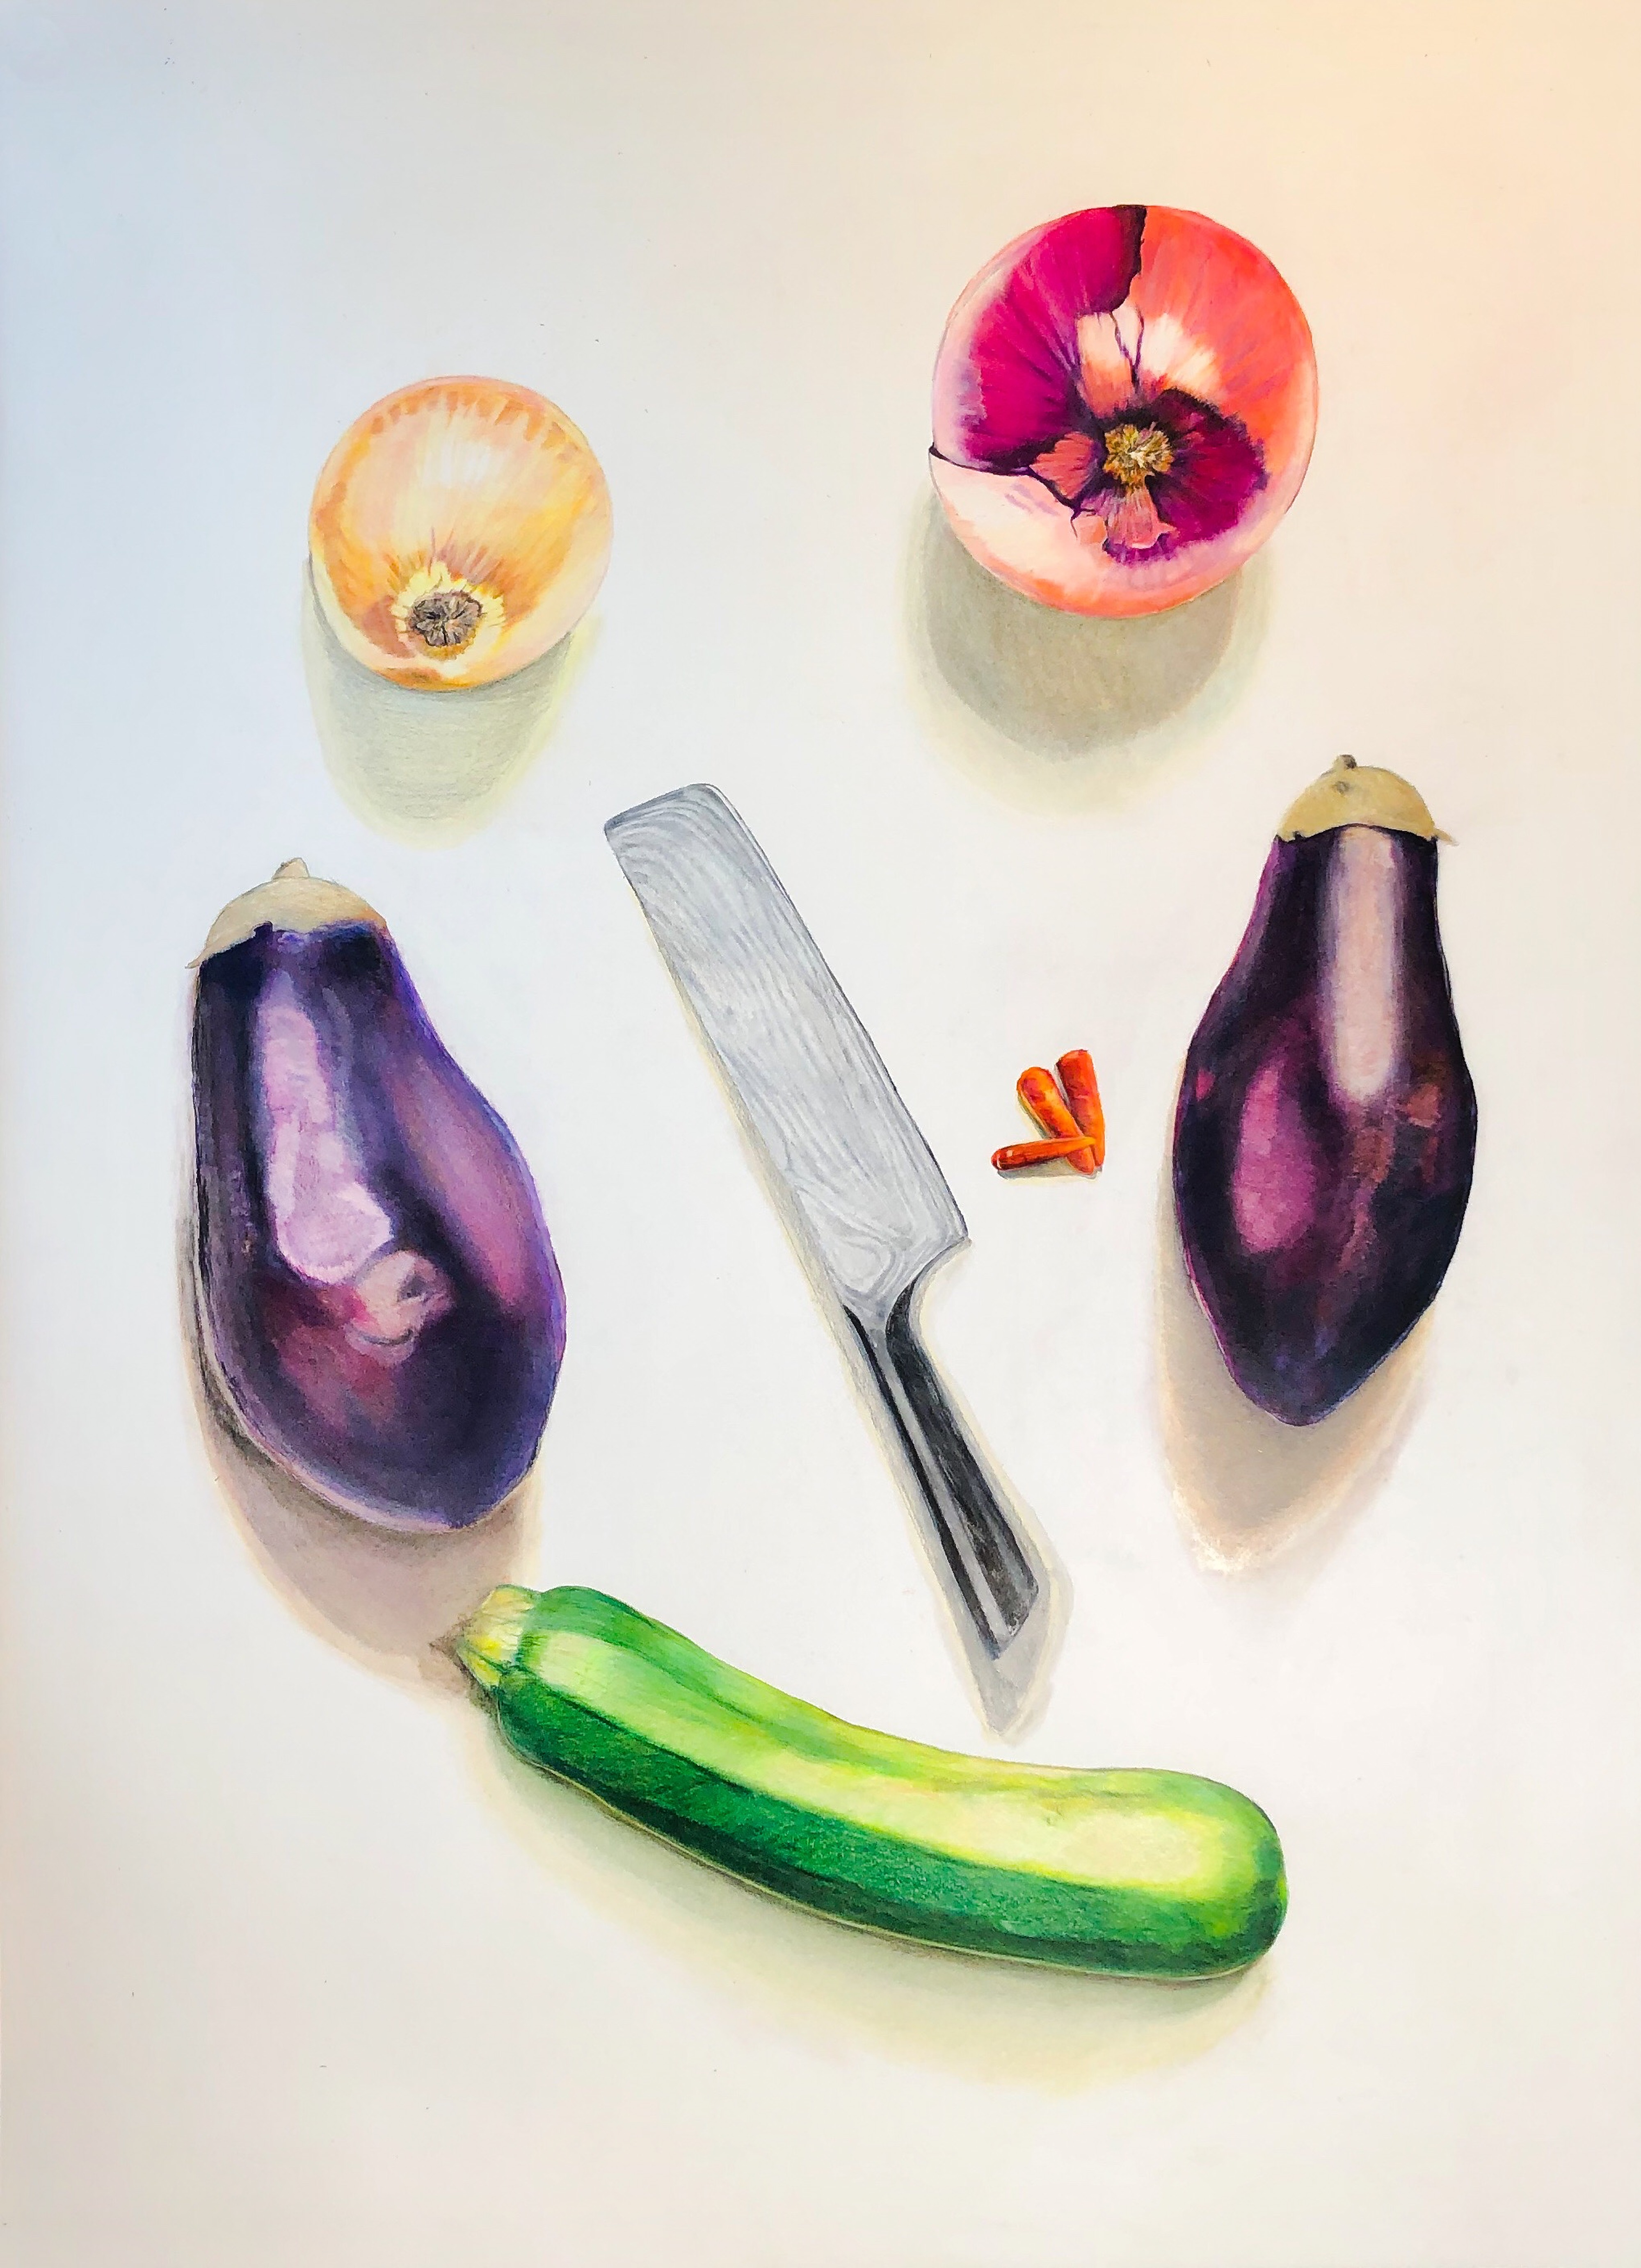 La mort de l'homme de légumes by Troy Tagliarino | ArtworkNetwork.com